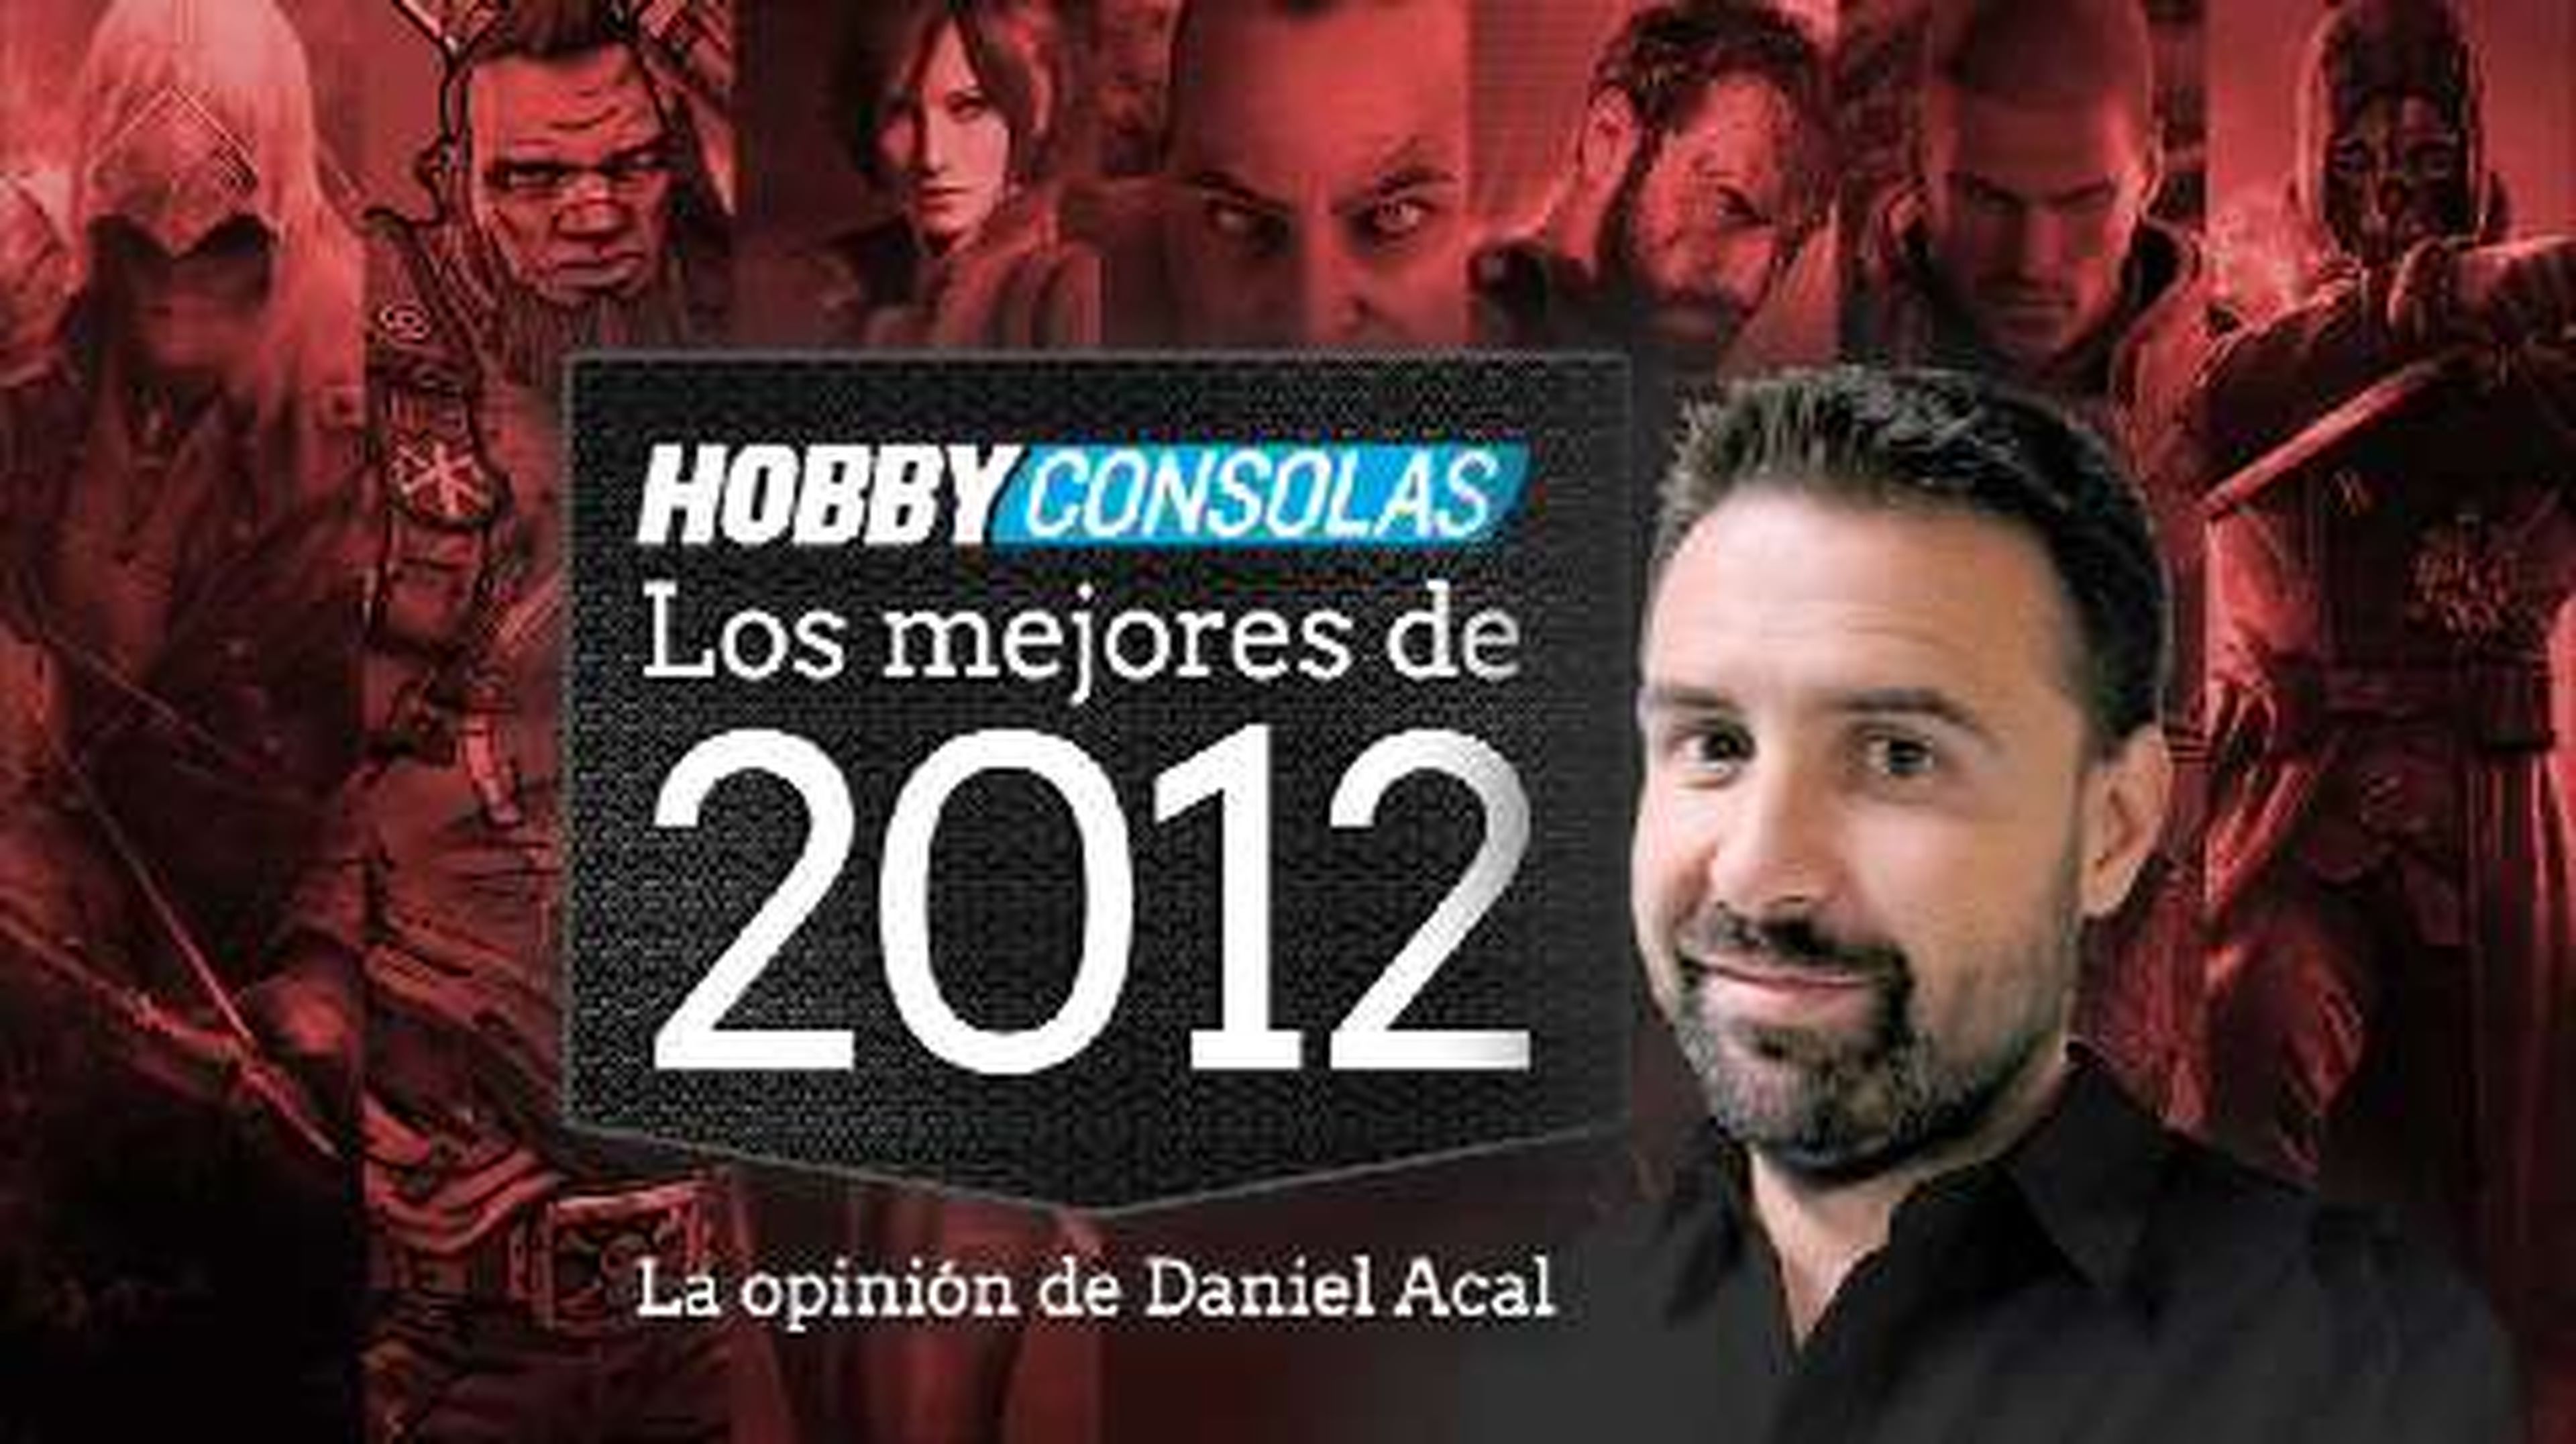 Lo mejor de 2012 (HD) Daniel Acal en HobbyConsolas.com